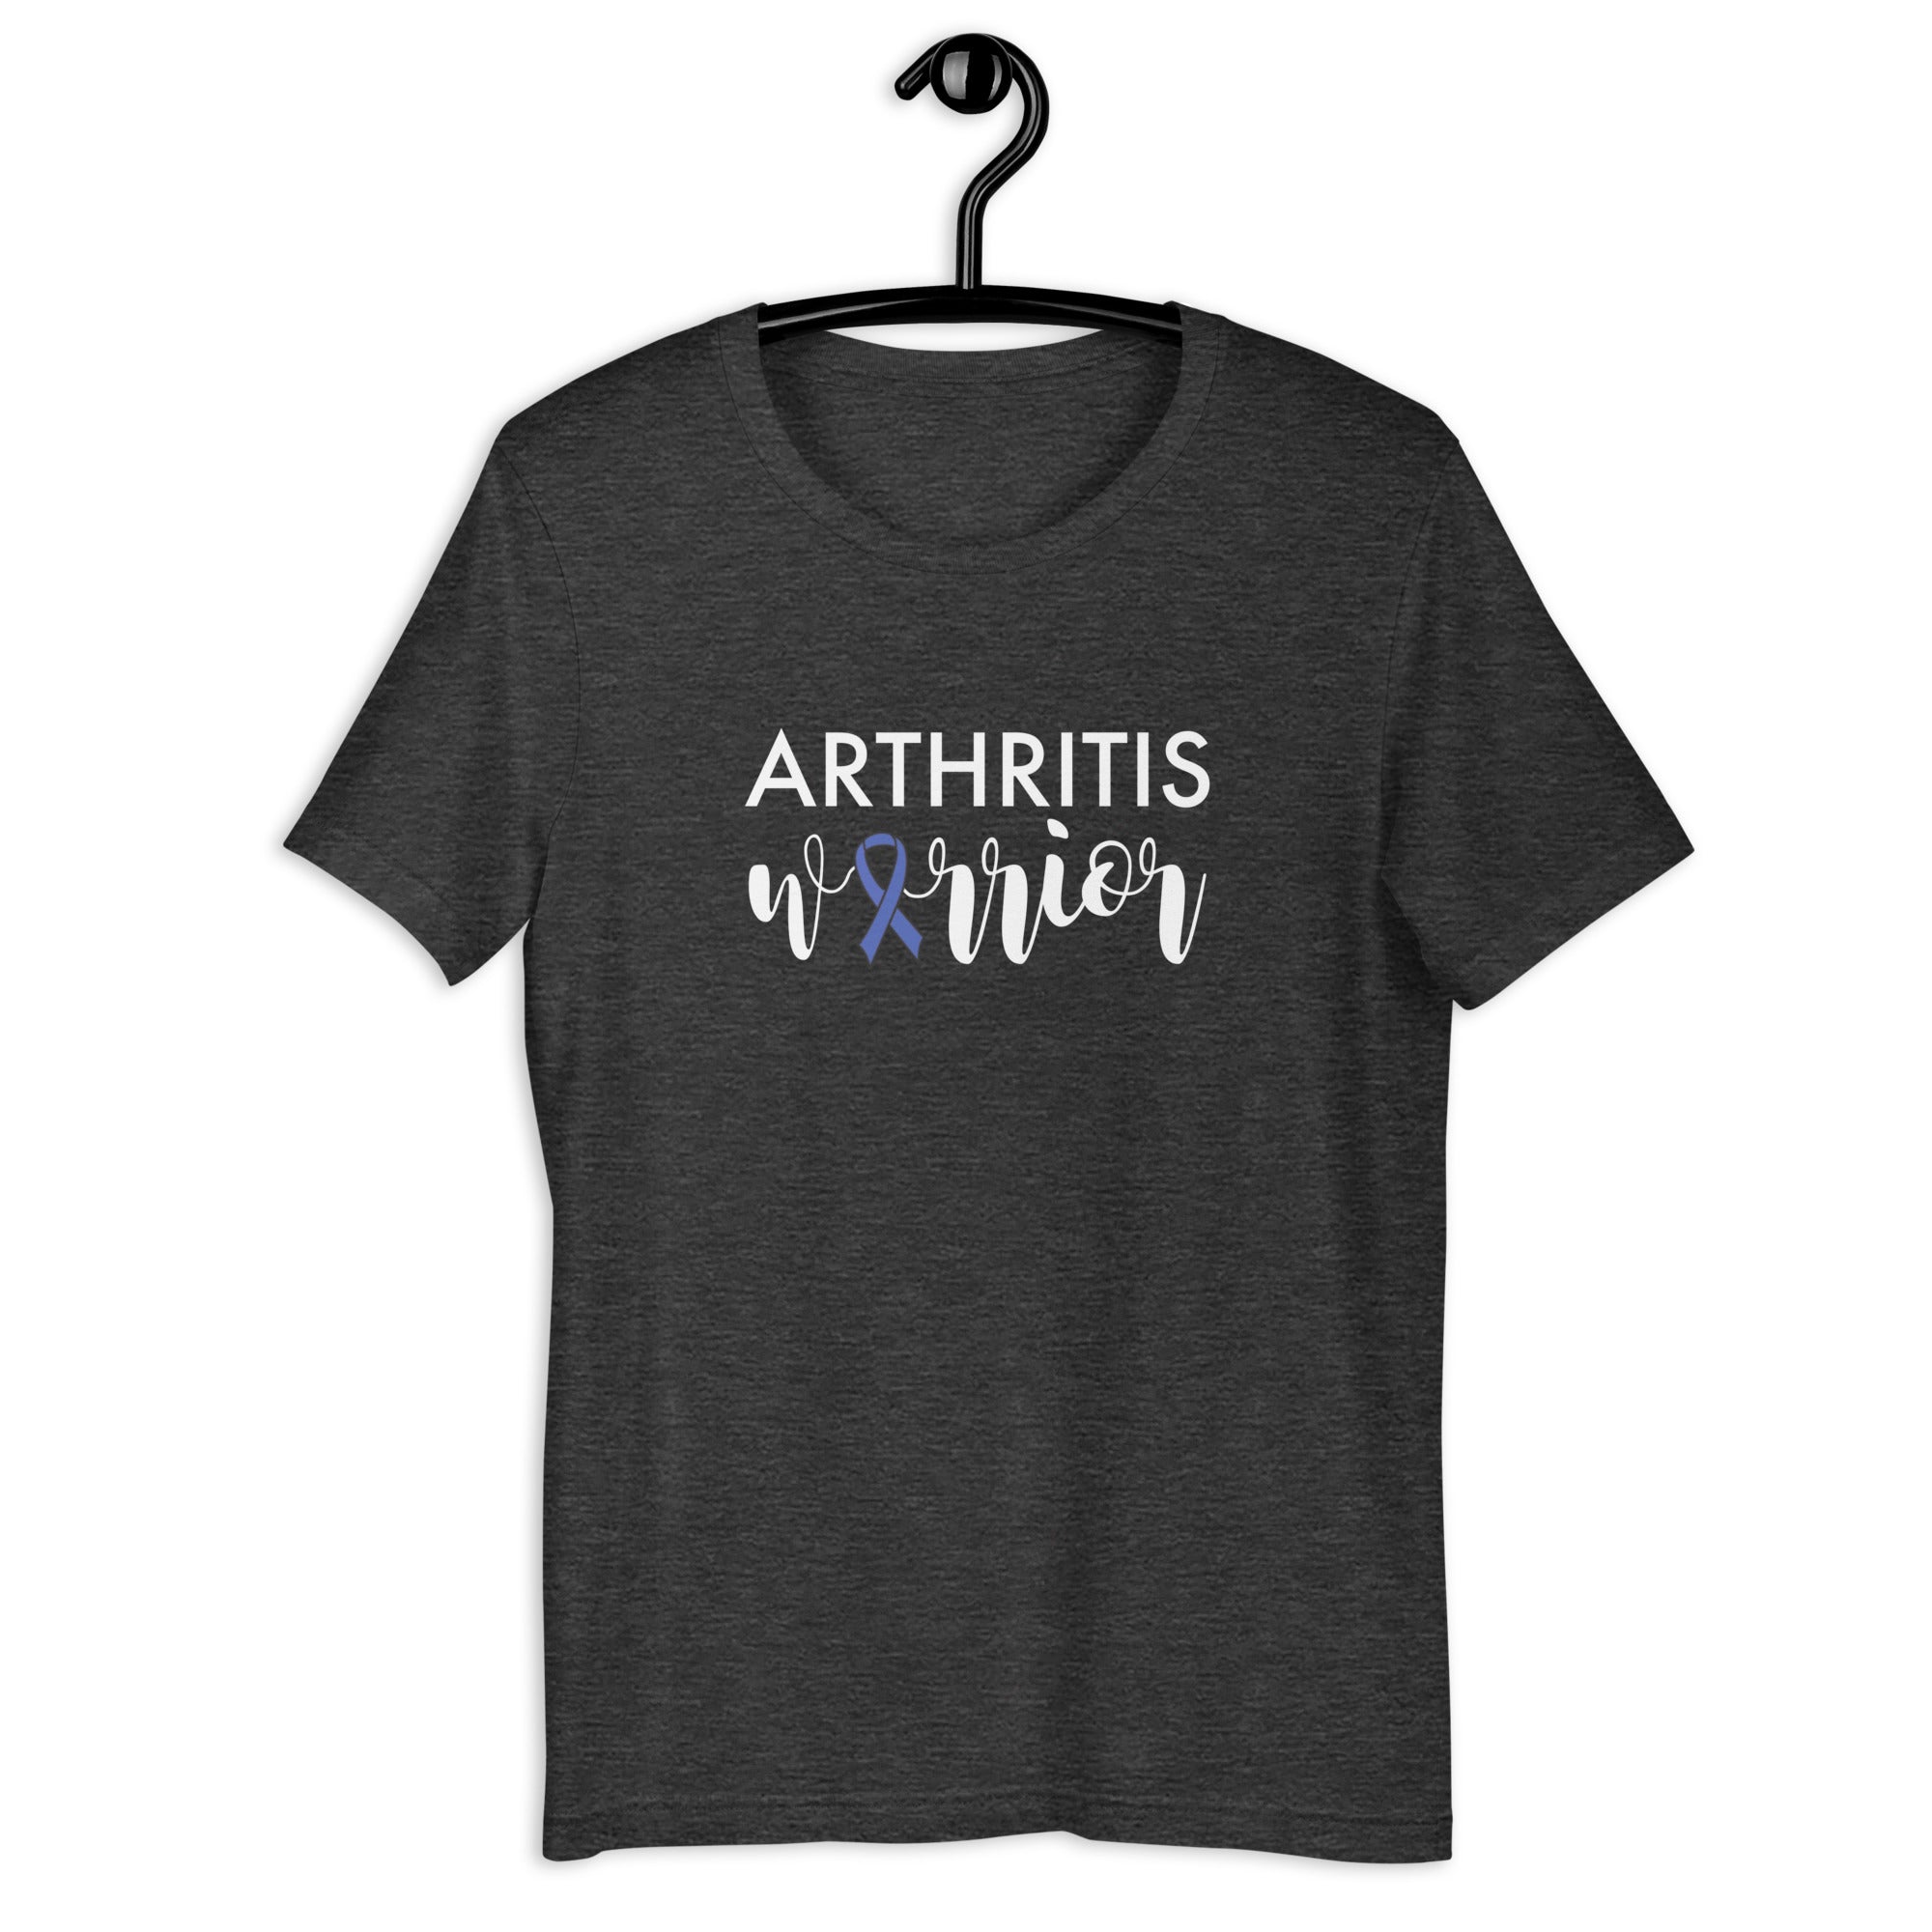 Arthritis Warrior T-Shirt